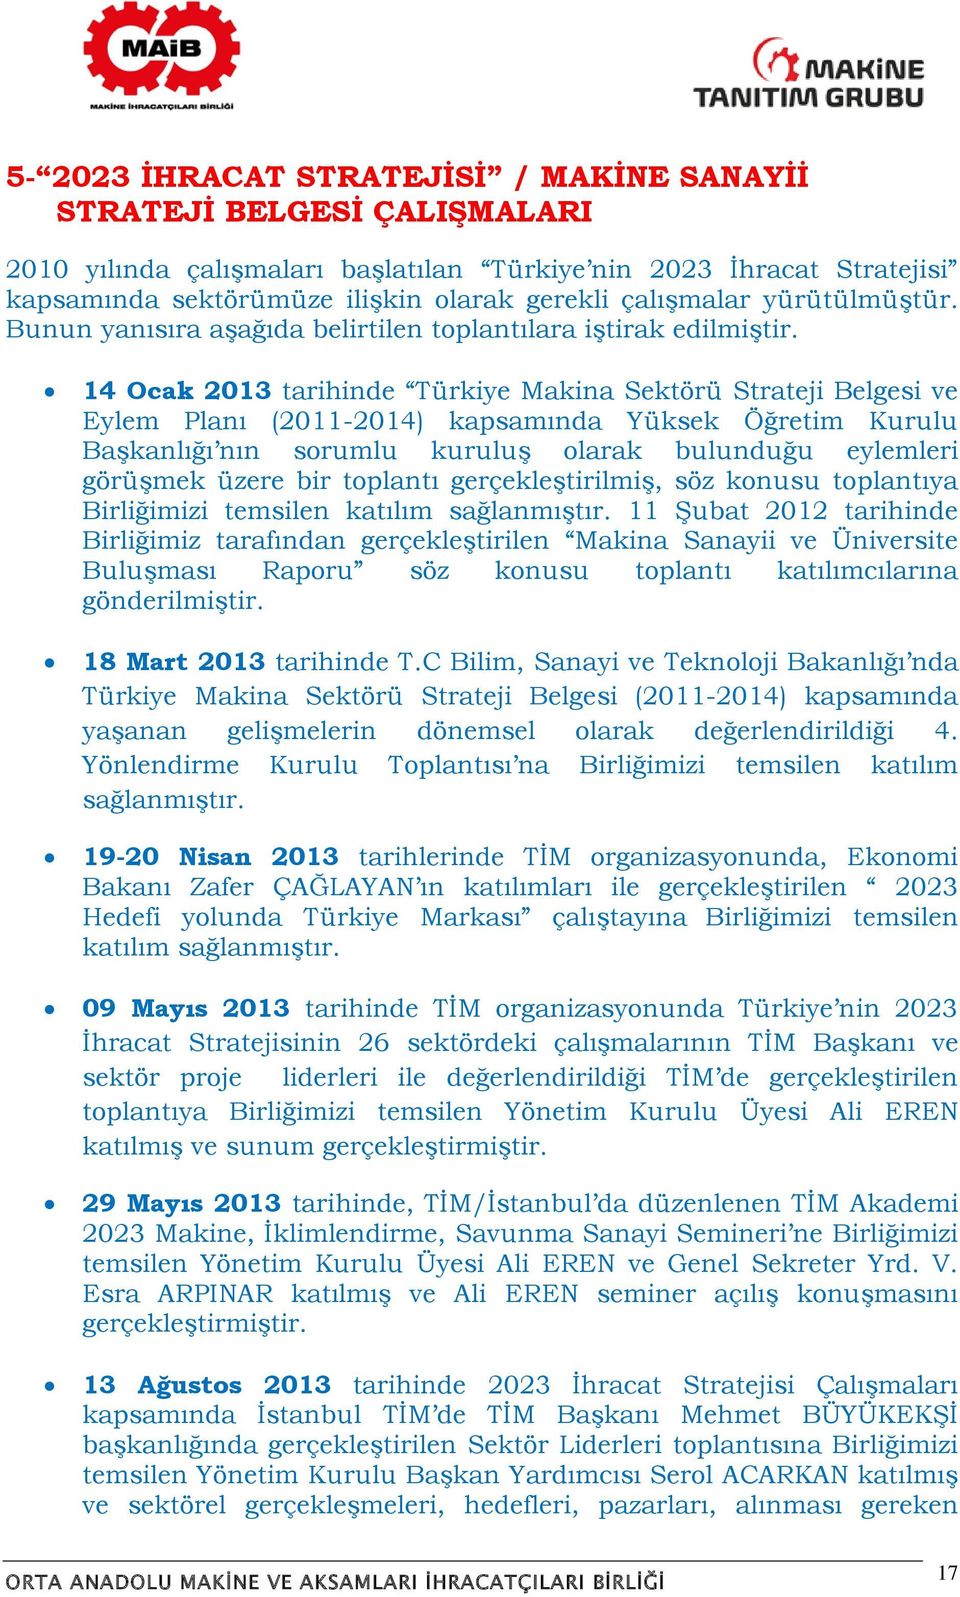 14 Ocak 2013 tarihinde Türkiye Makina Sektörü Strateji Belgesi ve Eylem Planı (2011-2014) kapsamında Yüksek Öğretim Kurulu Başkanlığı nın sorumlu kuruluş olarak bulunduğu eylemleri görüşmek üzere bir